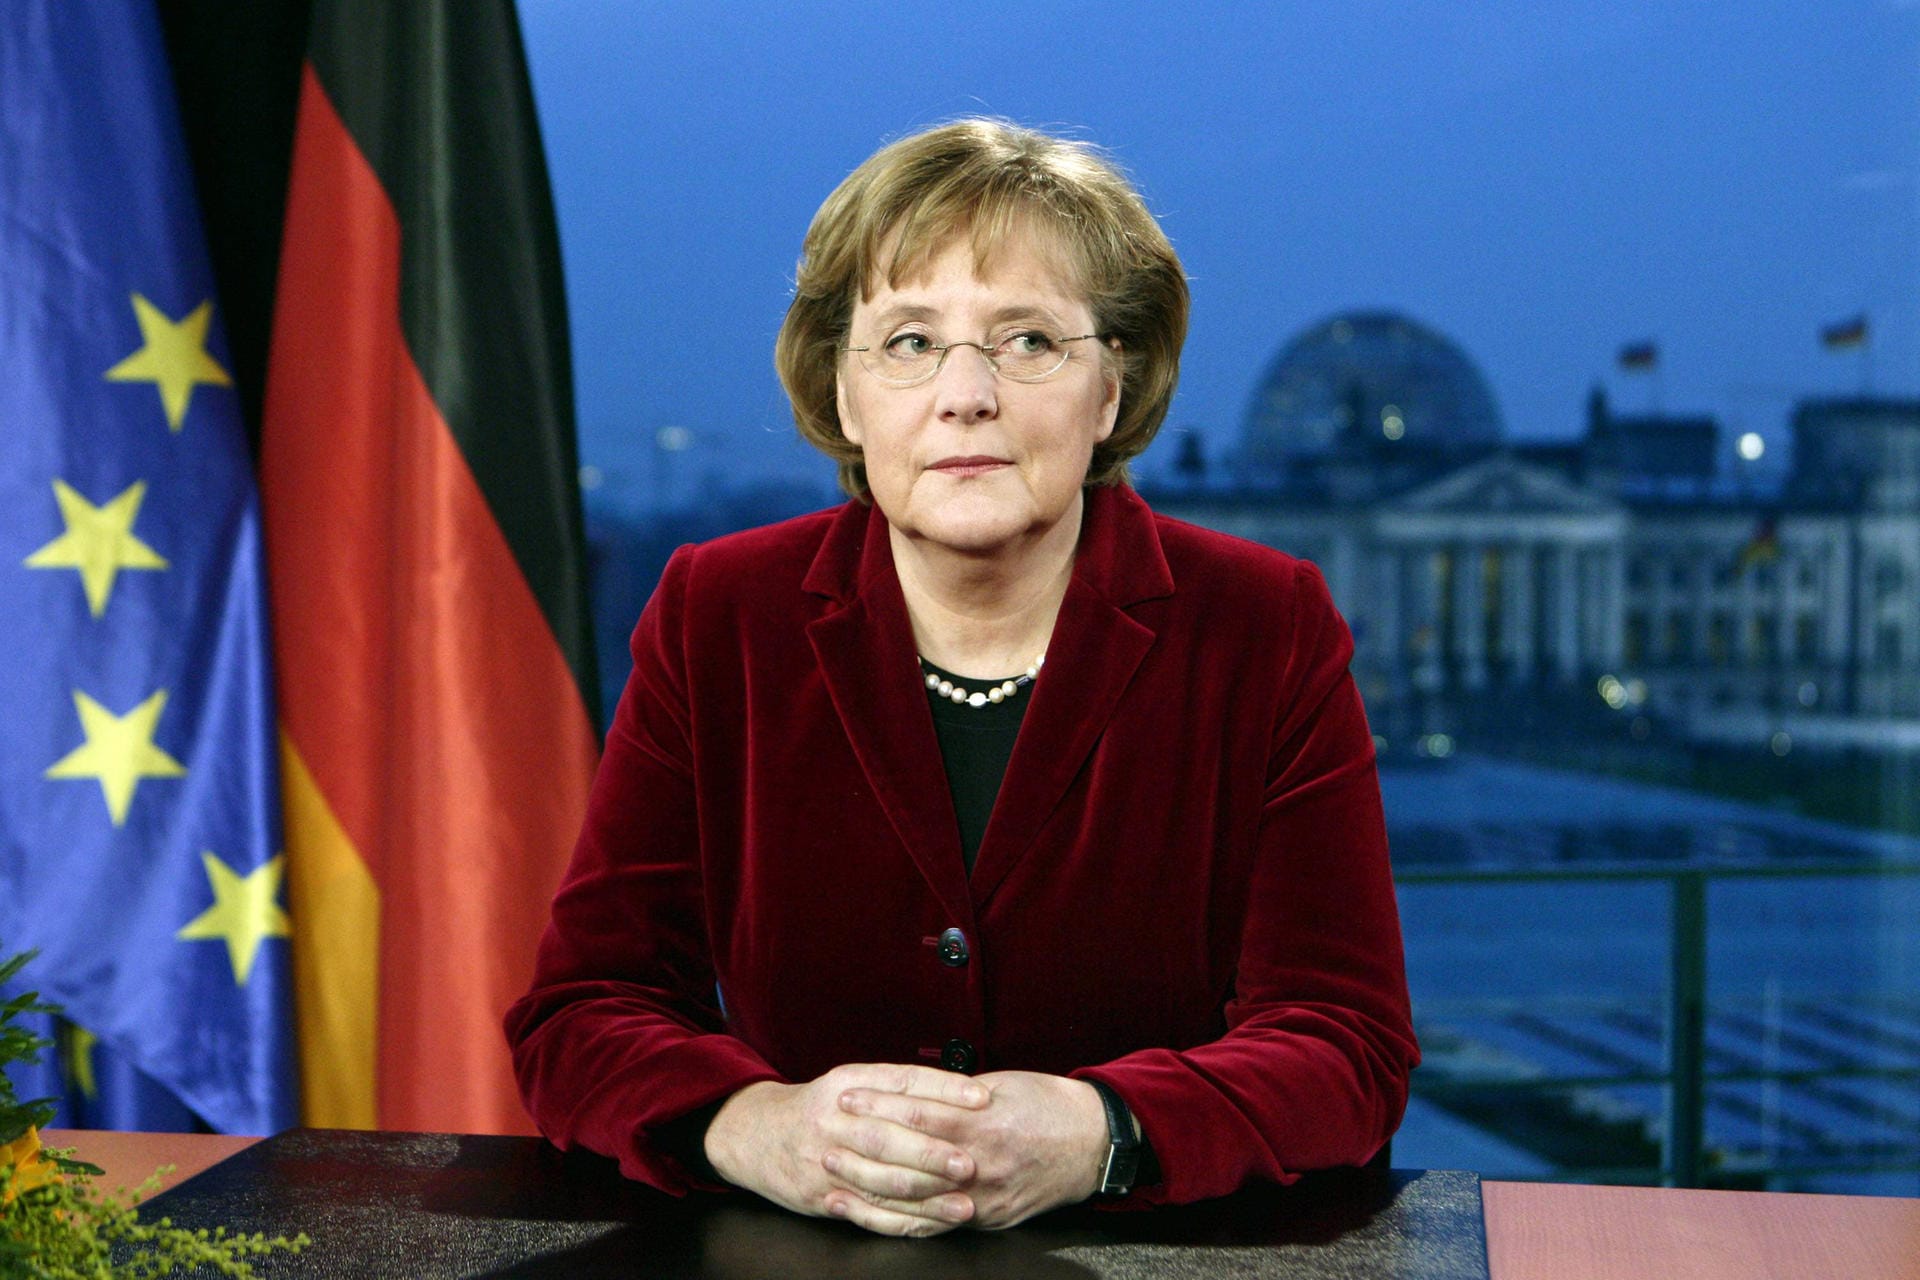 31. Dezember 2006: In ihrer Neujahrsansprache nennt Merkel die Reformpolitik ihrer Regierung unverzichtbar – darunter auch die angestrebte Rente mit 67. Im März 2007 beschließt der Bundestag die schrittweise Anhebung des Rentenalters von 65 auf 67 Jahre.